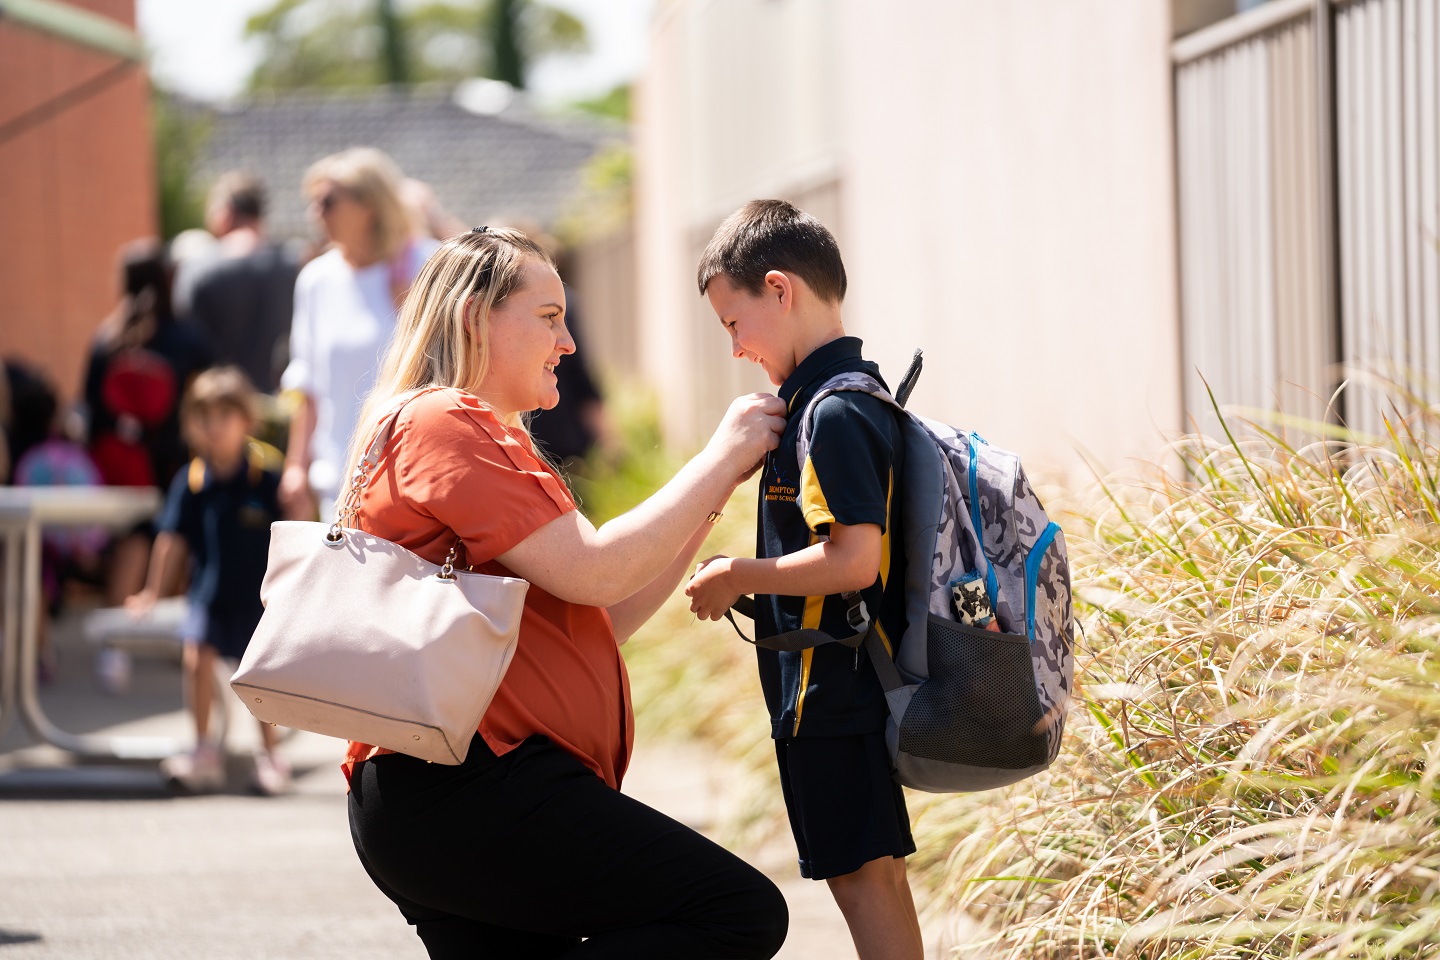 Mum kneeling down to speak to young boy in school uniform before he walks into school